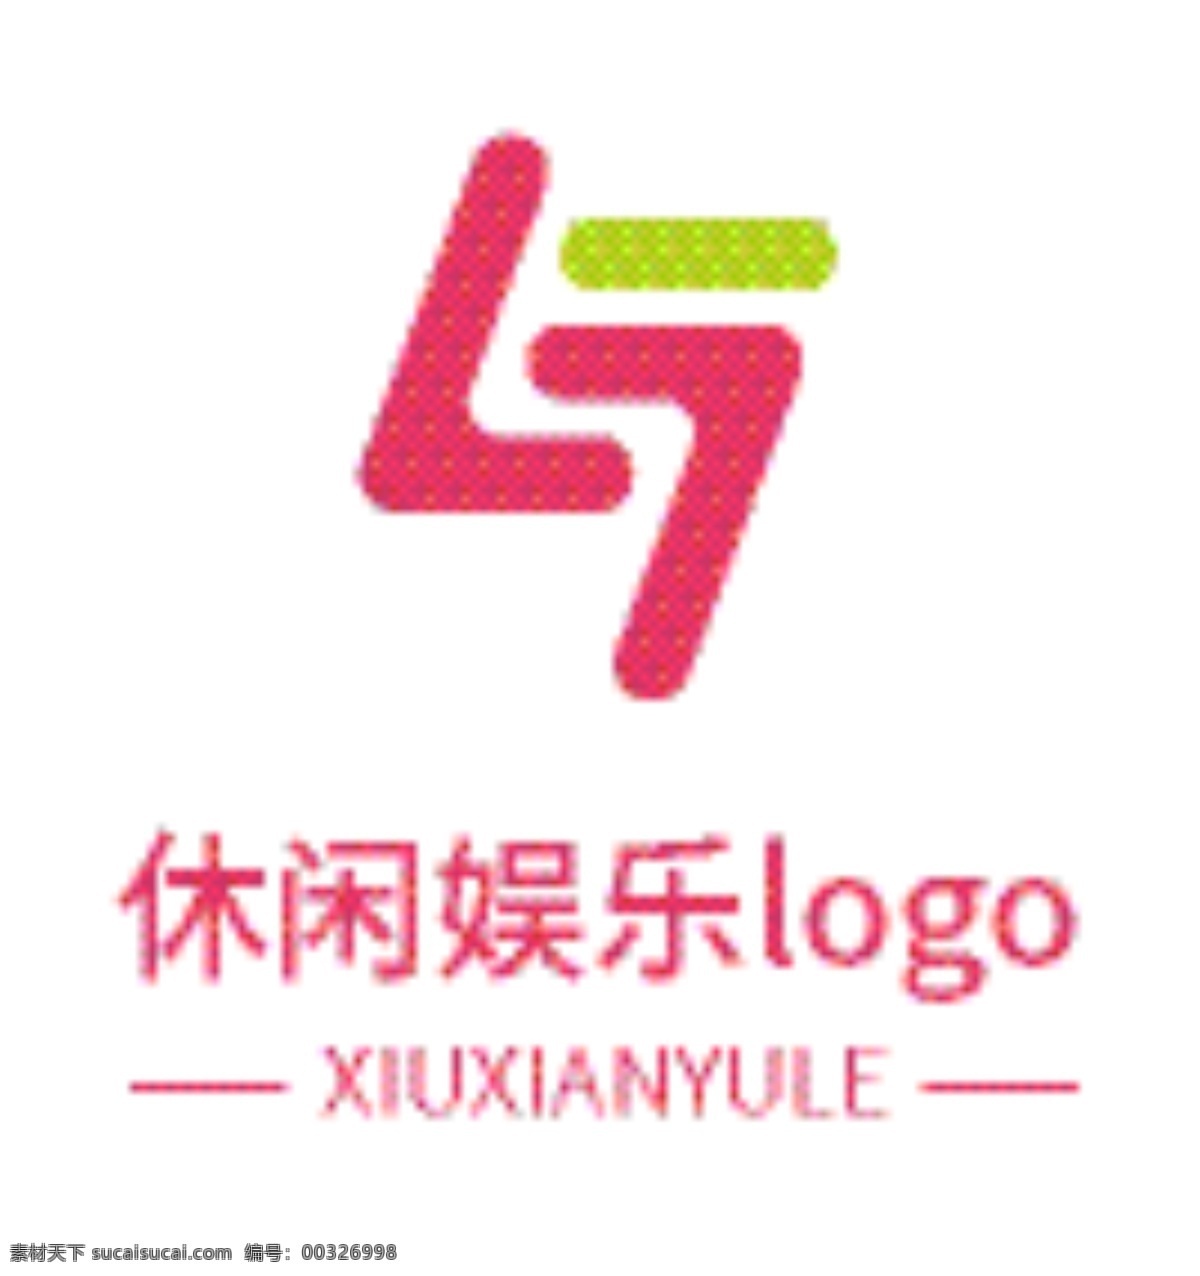 休闲 娱乐 logo 创意logo logo设计 红黄logo 几何logo